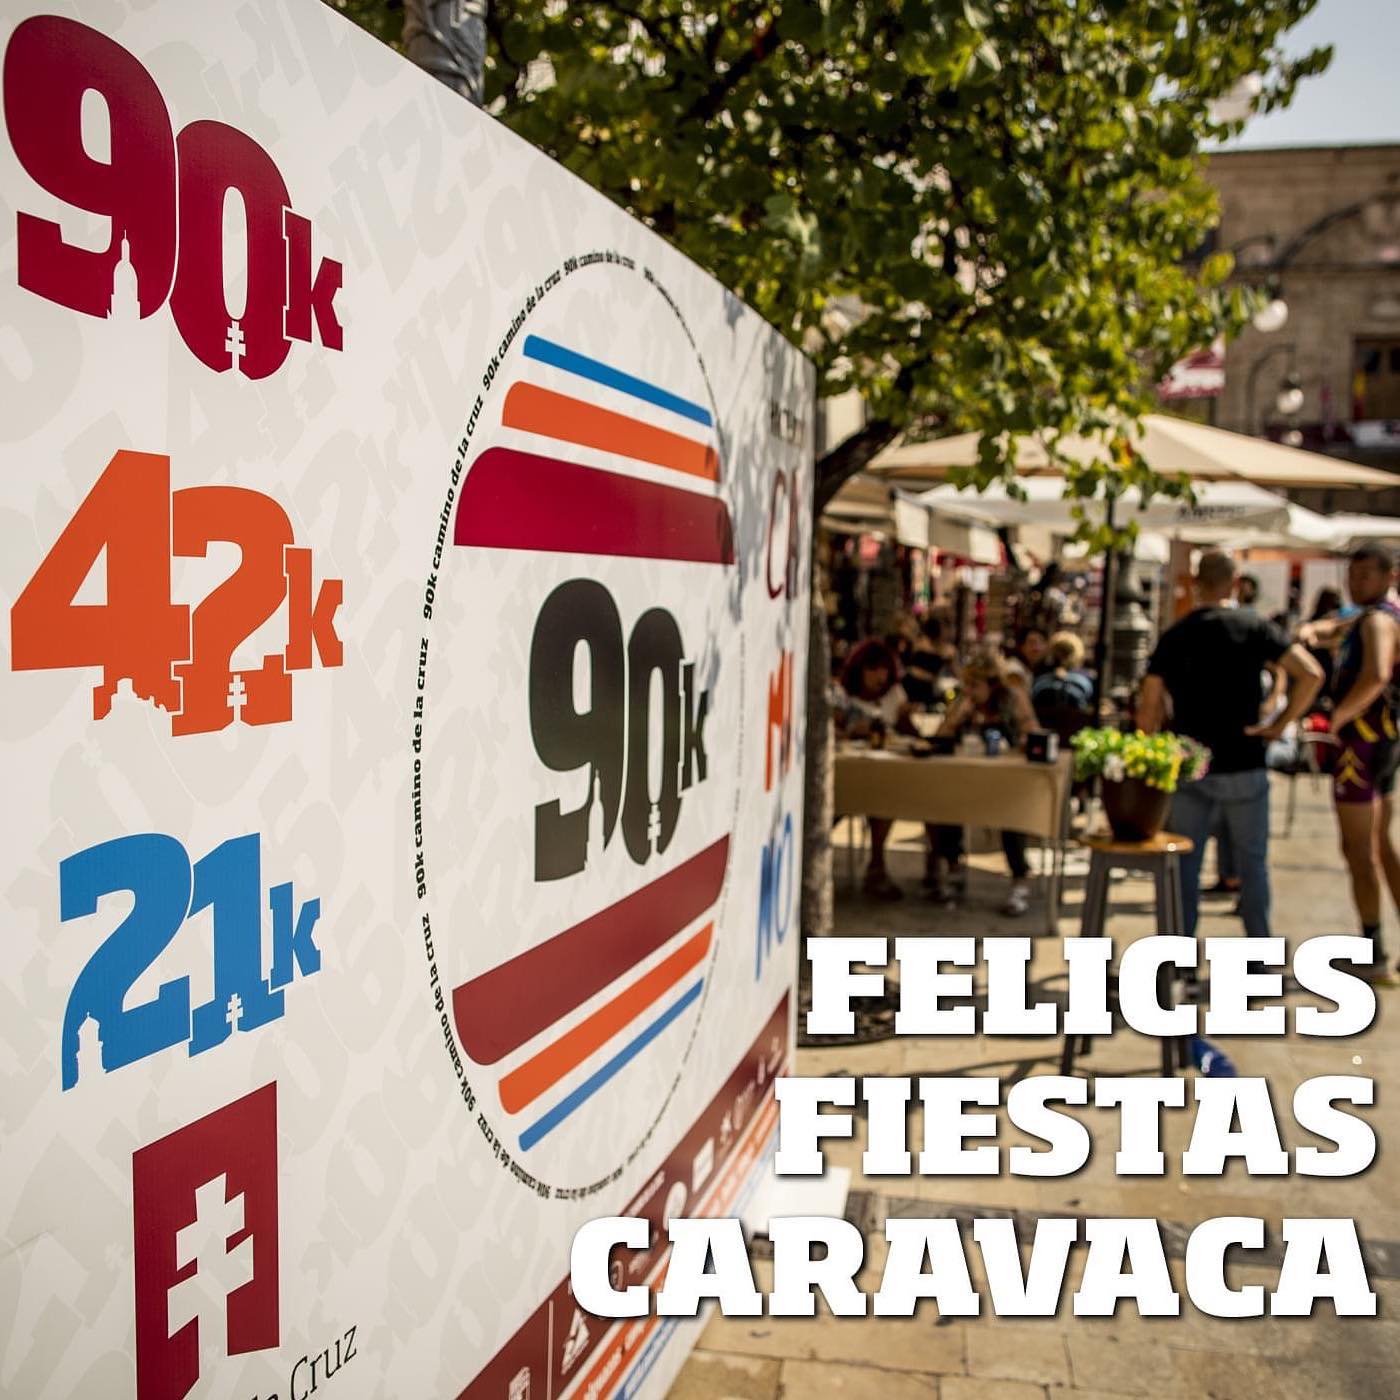 Se acercan las #FiestasDeCaravaca y desde la 90k Camino de la Cruz queremos desear a todos los caravaqueños unas felices fiestas y a disfrutar de tanto que nos habíamos quedado estos dos años.

¡Felices Fiestas!